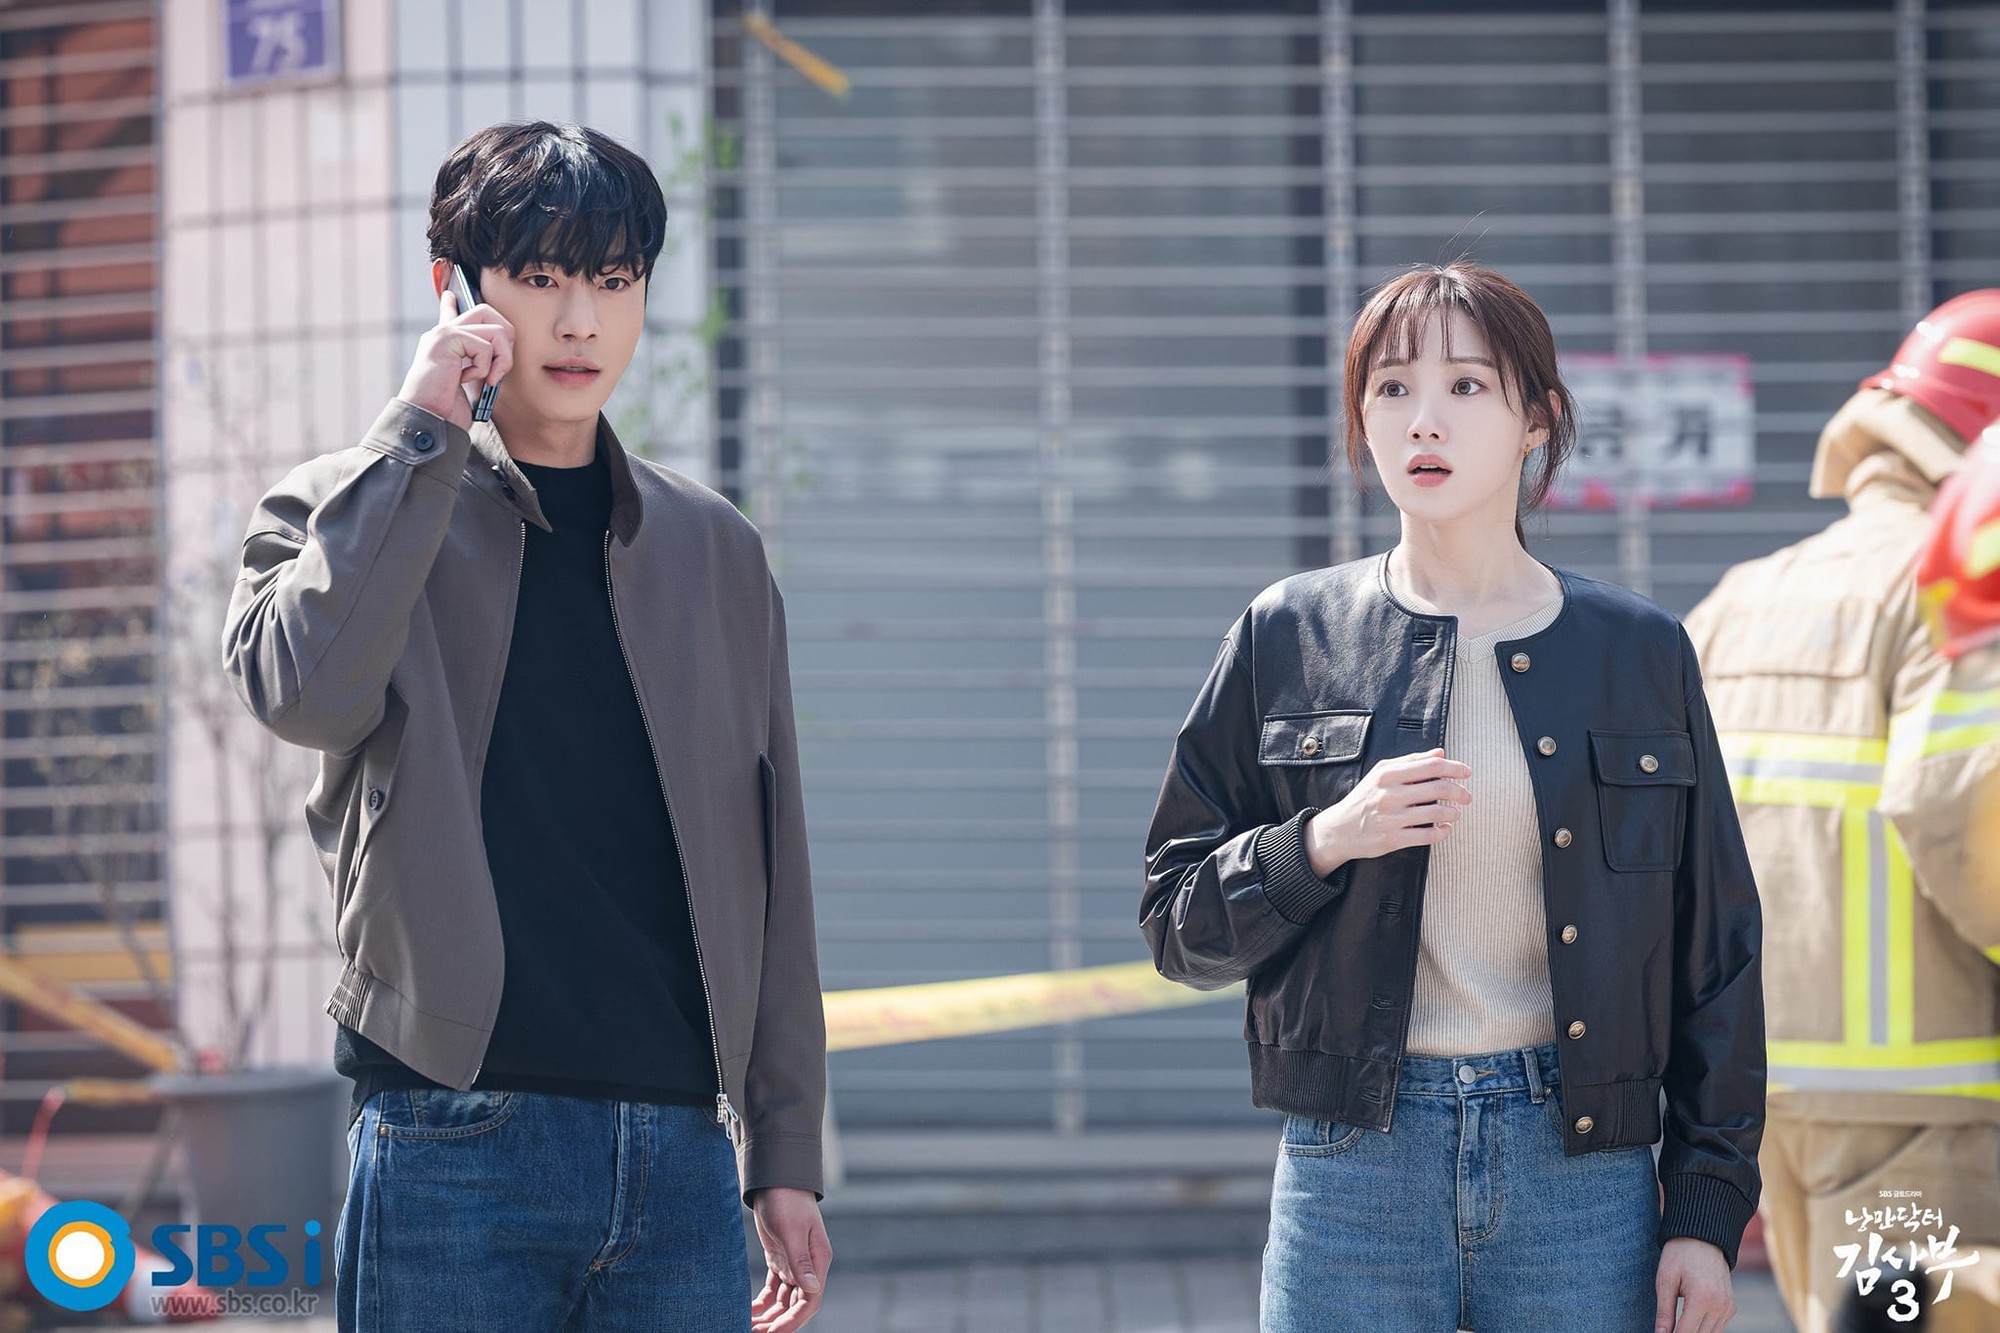 Phim Người thầy y đức 3 tập 9: Ahn Hyo Seop liên tiếp gặp nguy hiểm? - Ảnh 2.